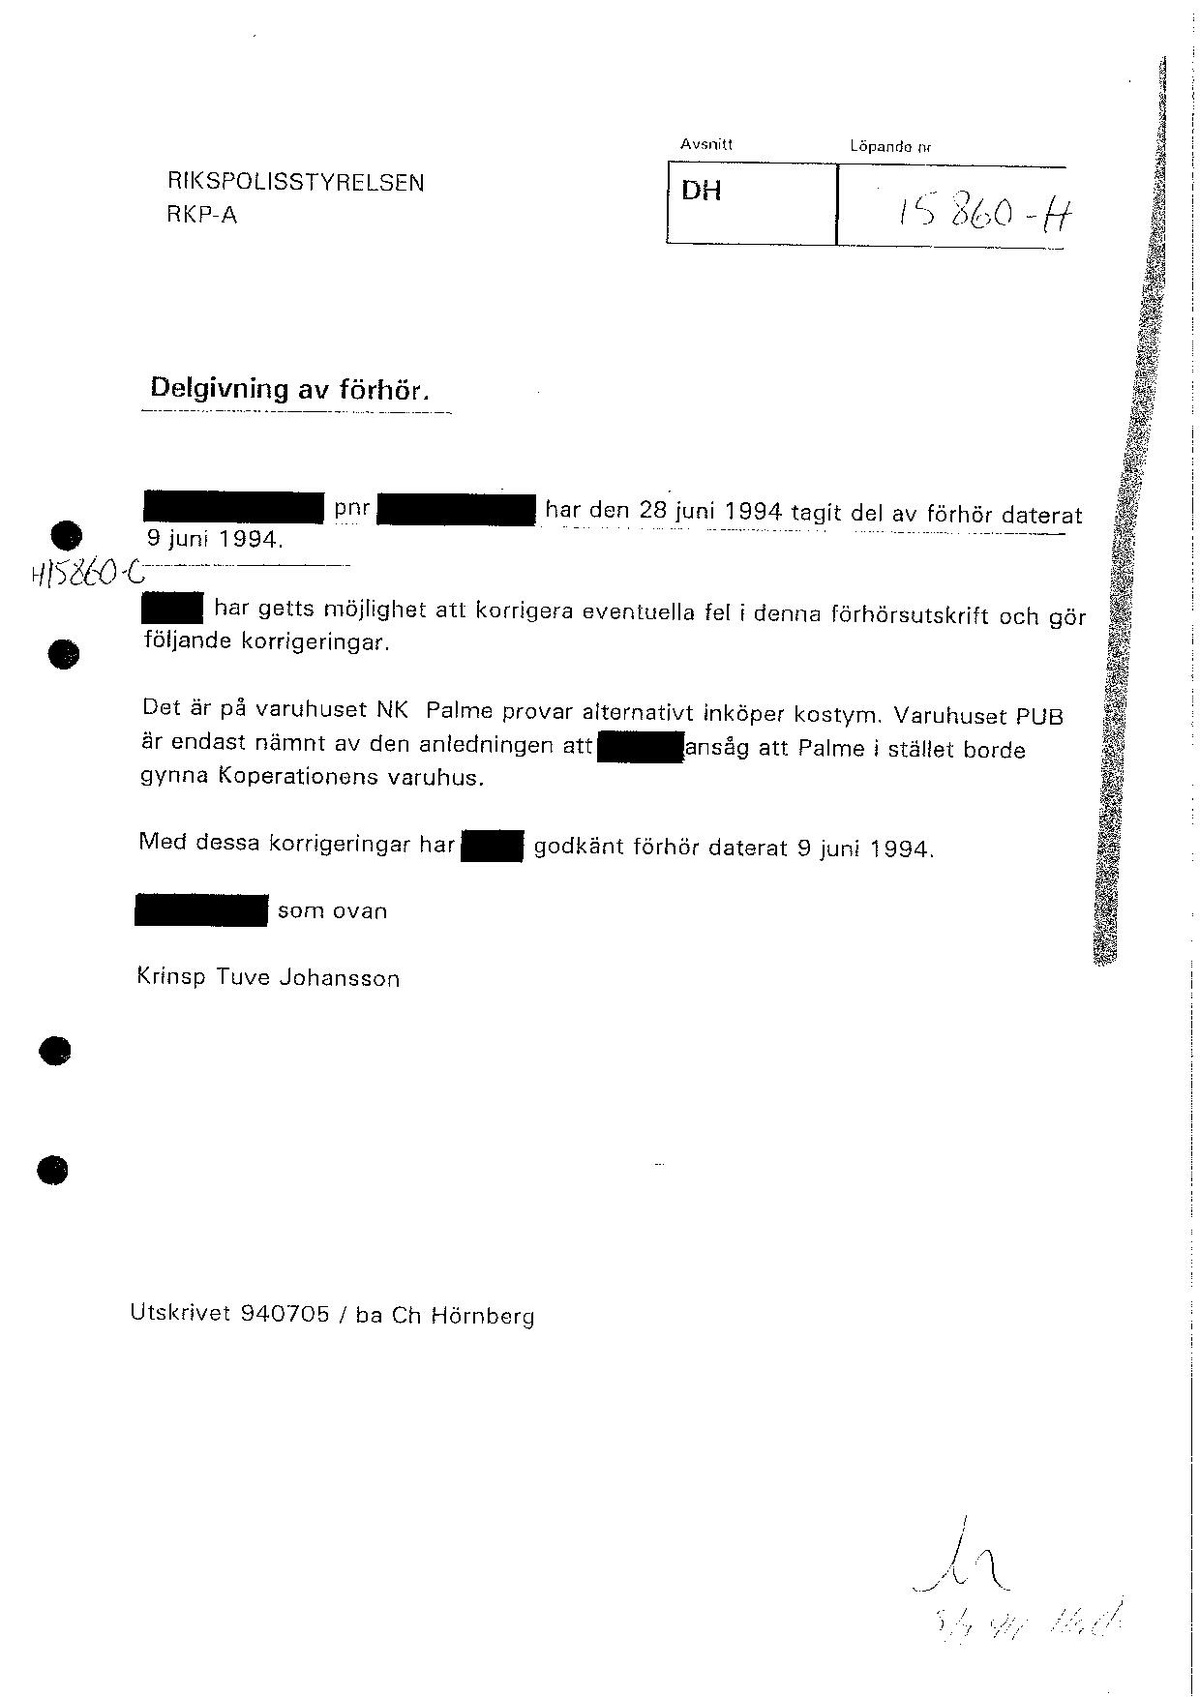 Pol-1994-06-09 DH15860-H Dedgivning förhör Harry P om bevakning av Palme.pdf